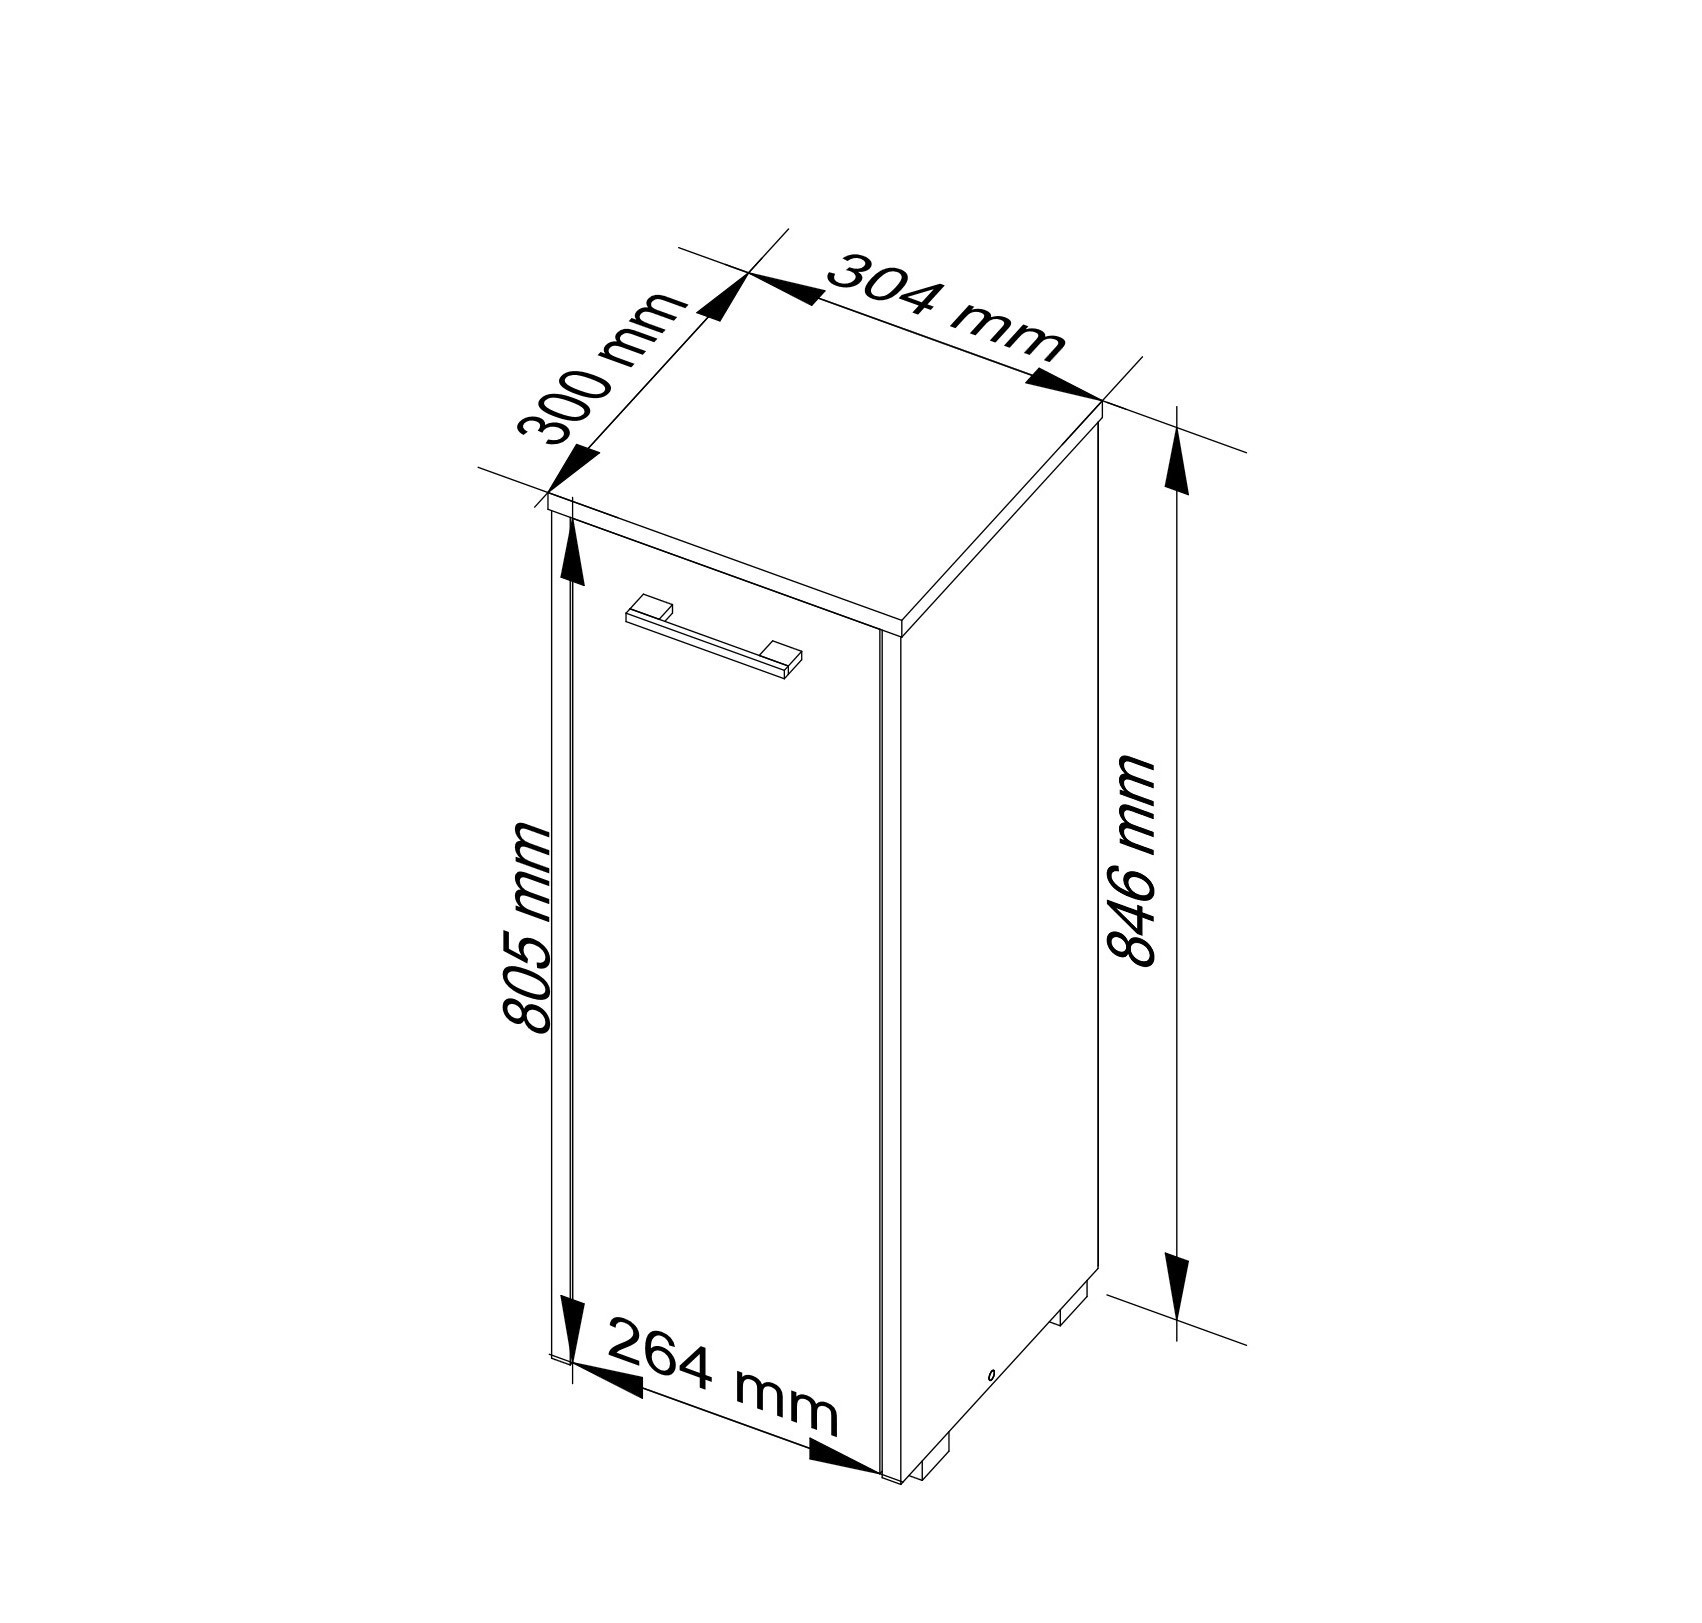 Meble AKORD - Szafka łazienkowa FIN Dąb Sonoma 30 cm 1 drzwi kolor Wenge mat 2 półki 30x30x82 cm - Wymiary toaletki AKORD - 5907504389493